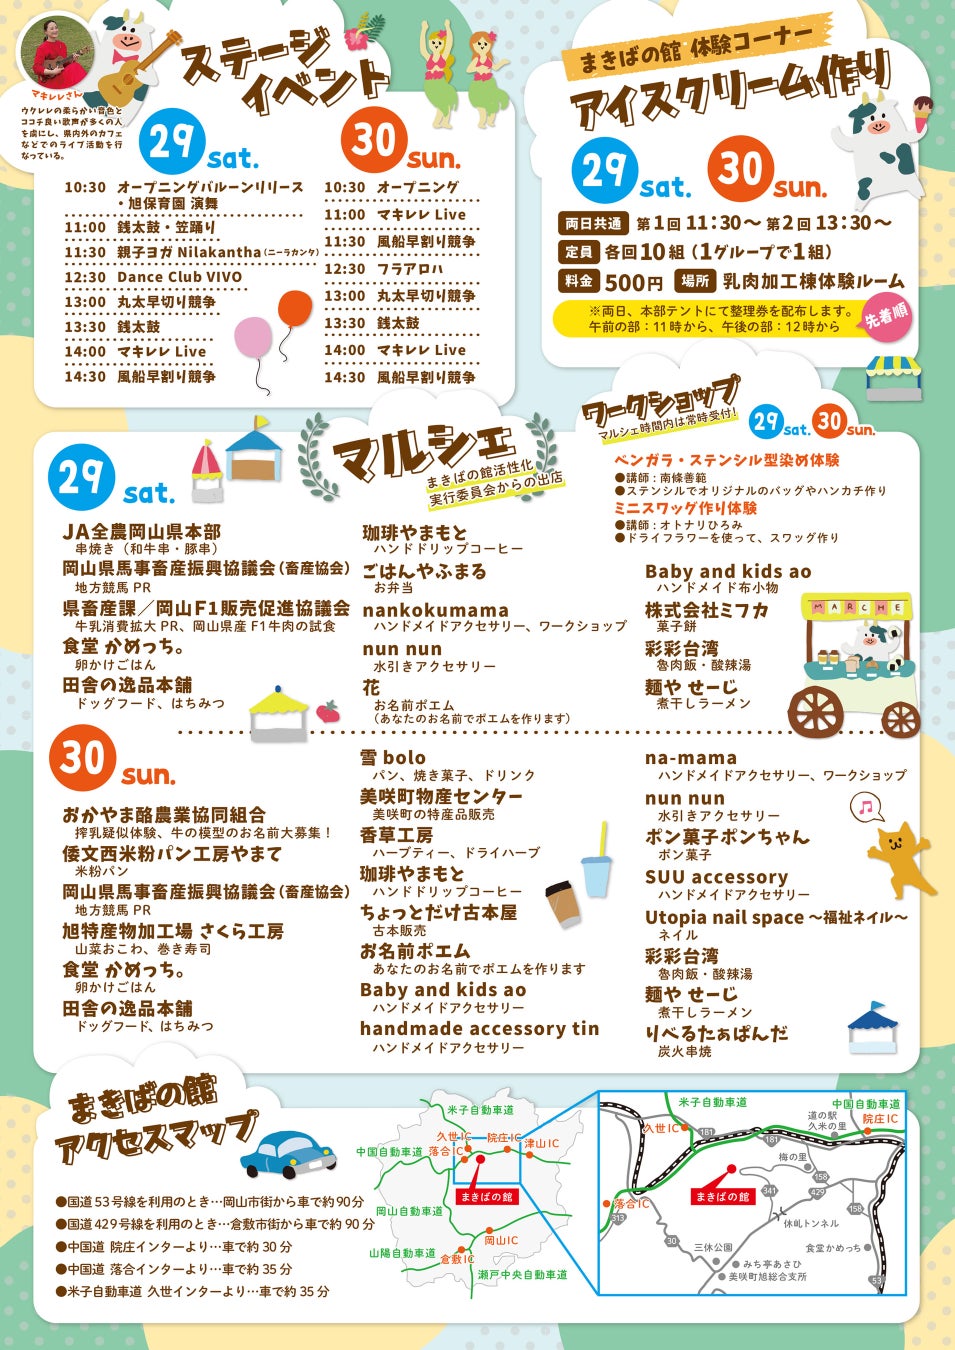 「まきば青空Festa」4月29日と30日に開催